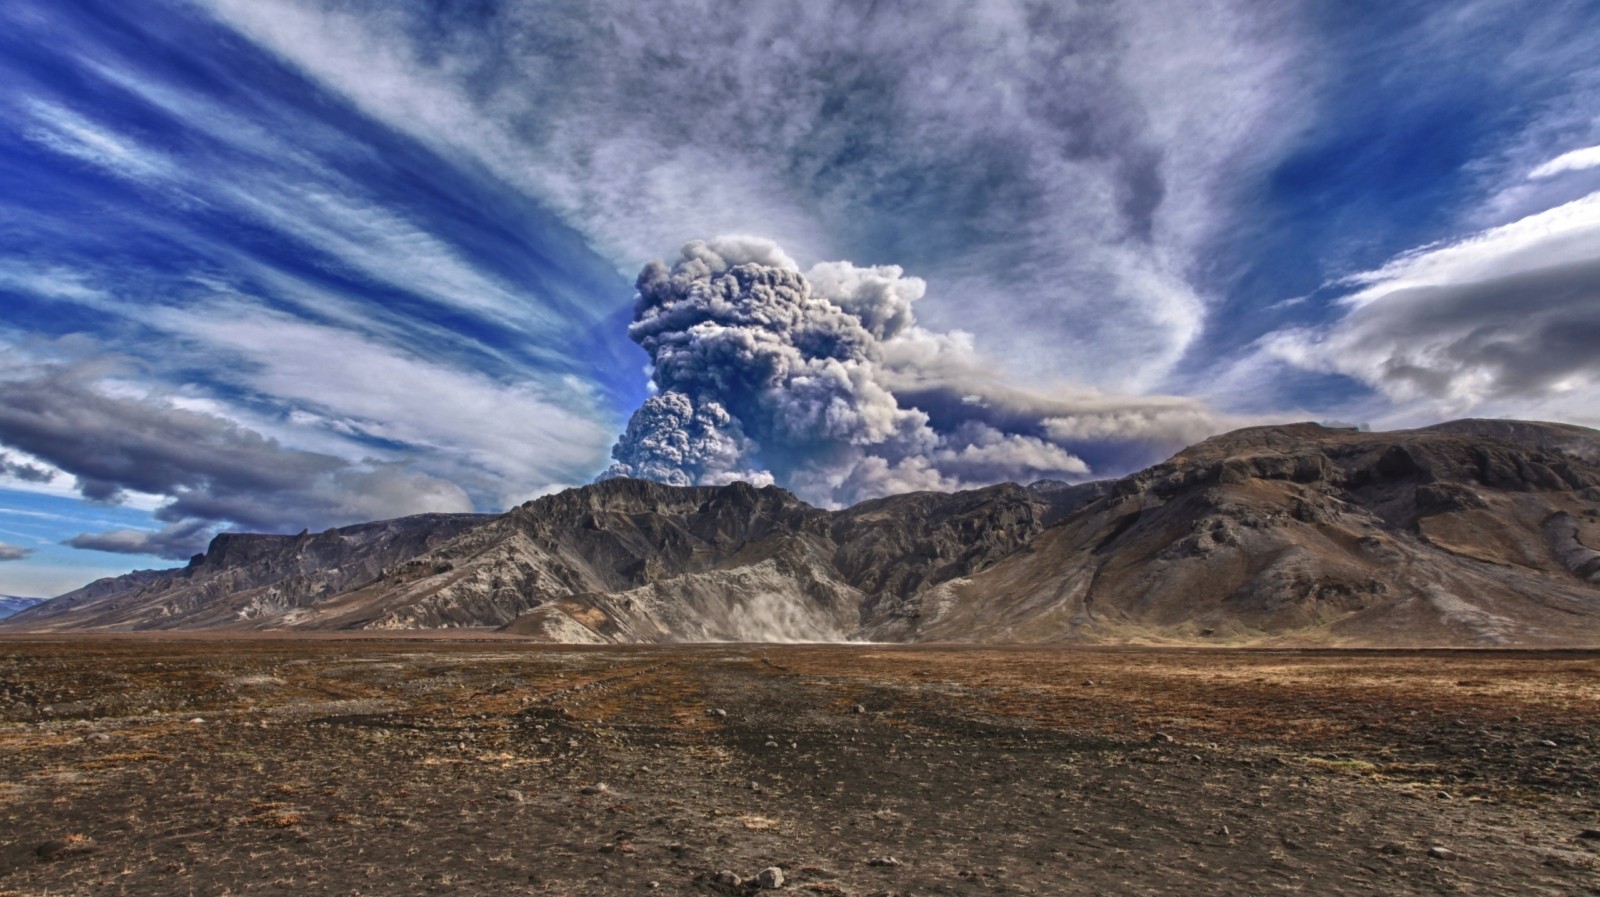 eyjafjallajökull eruption 2010 case study